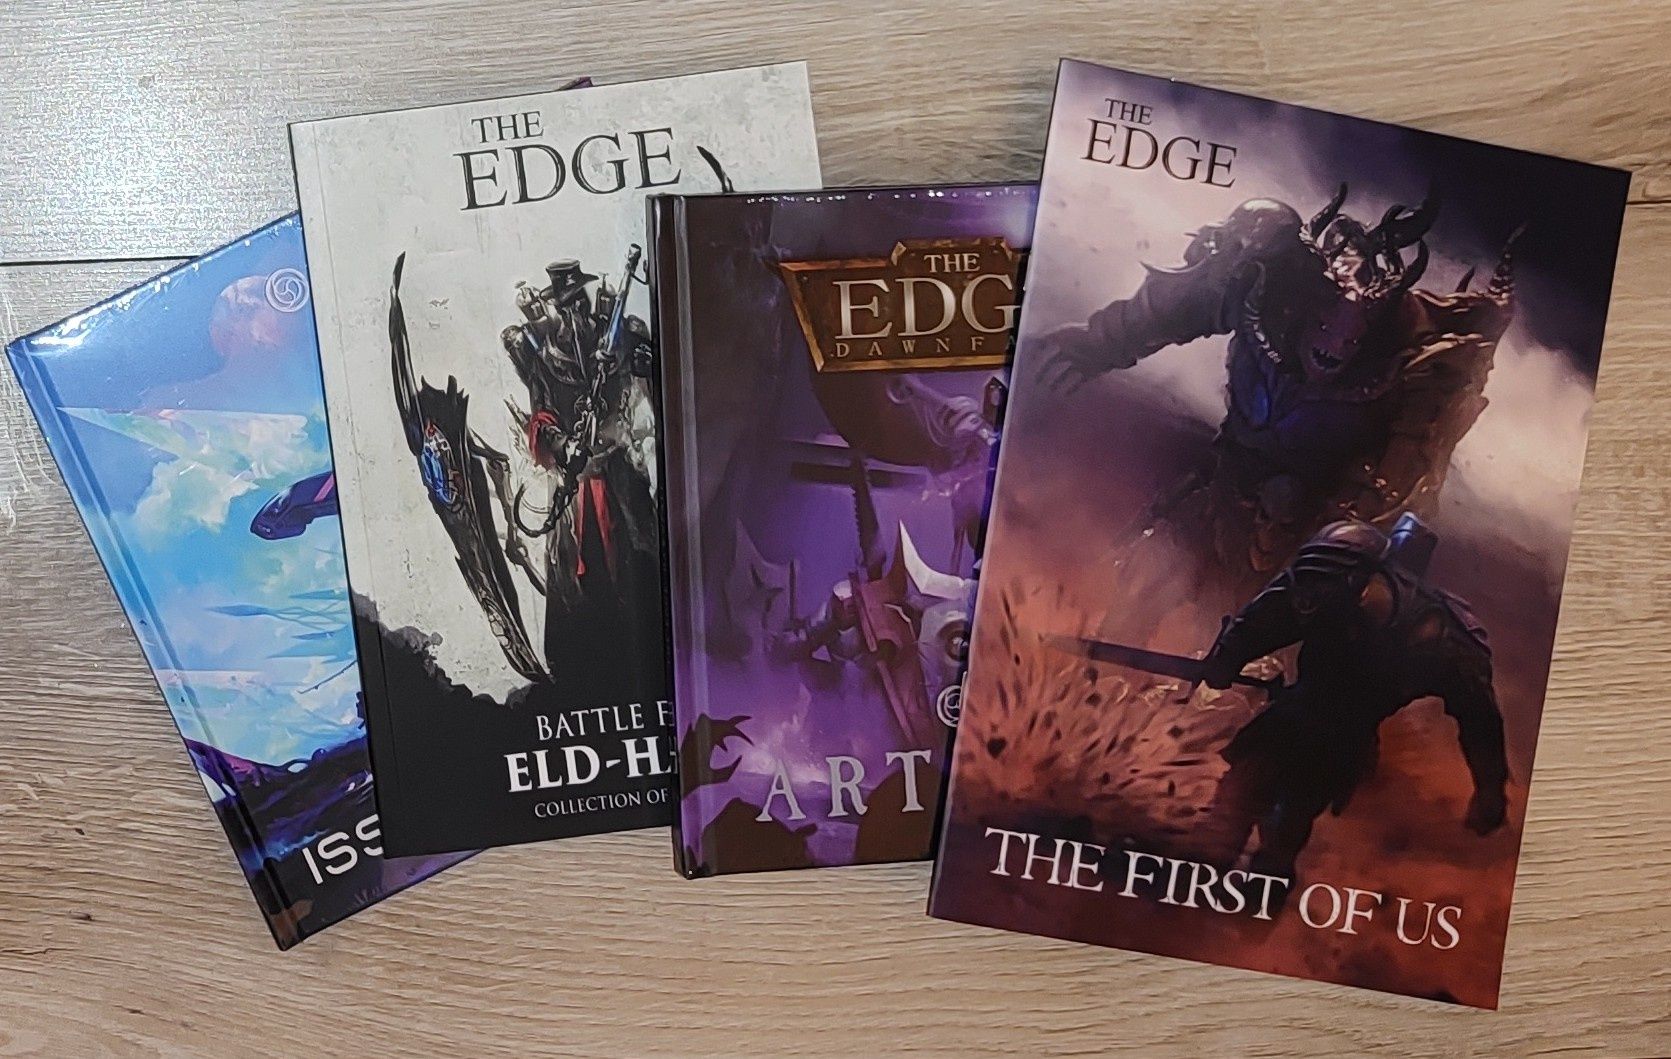 Edge Dawnfall - zestaw artbooków, komiks, książka